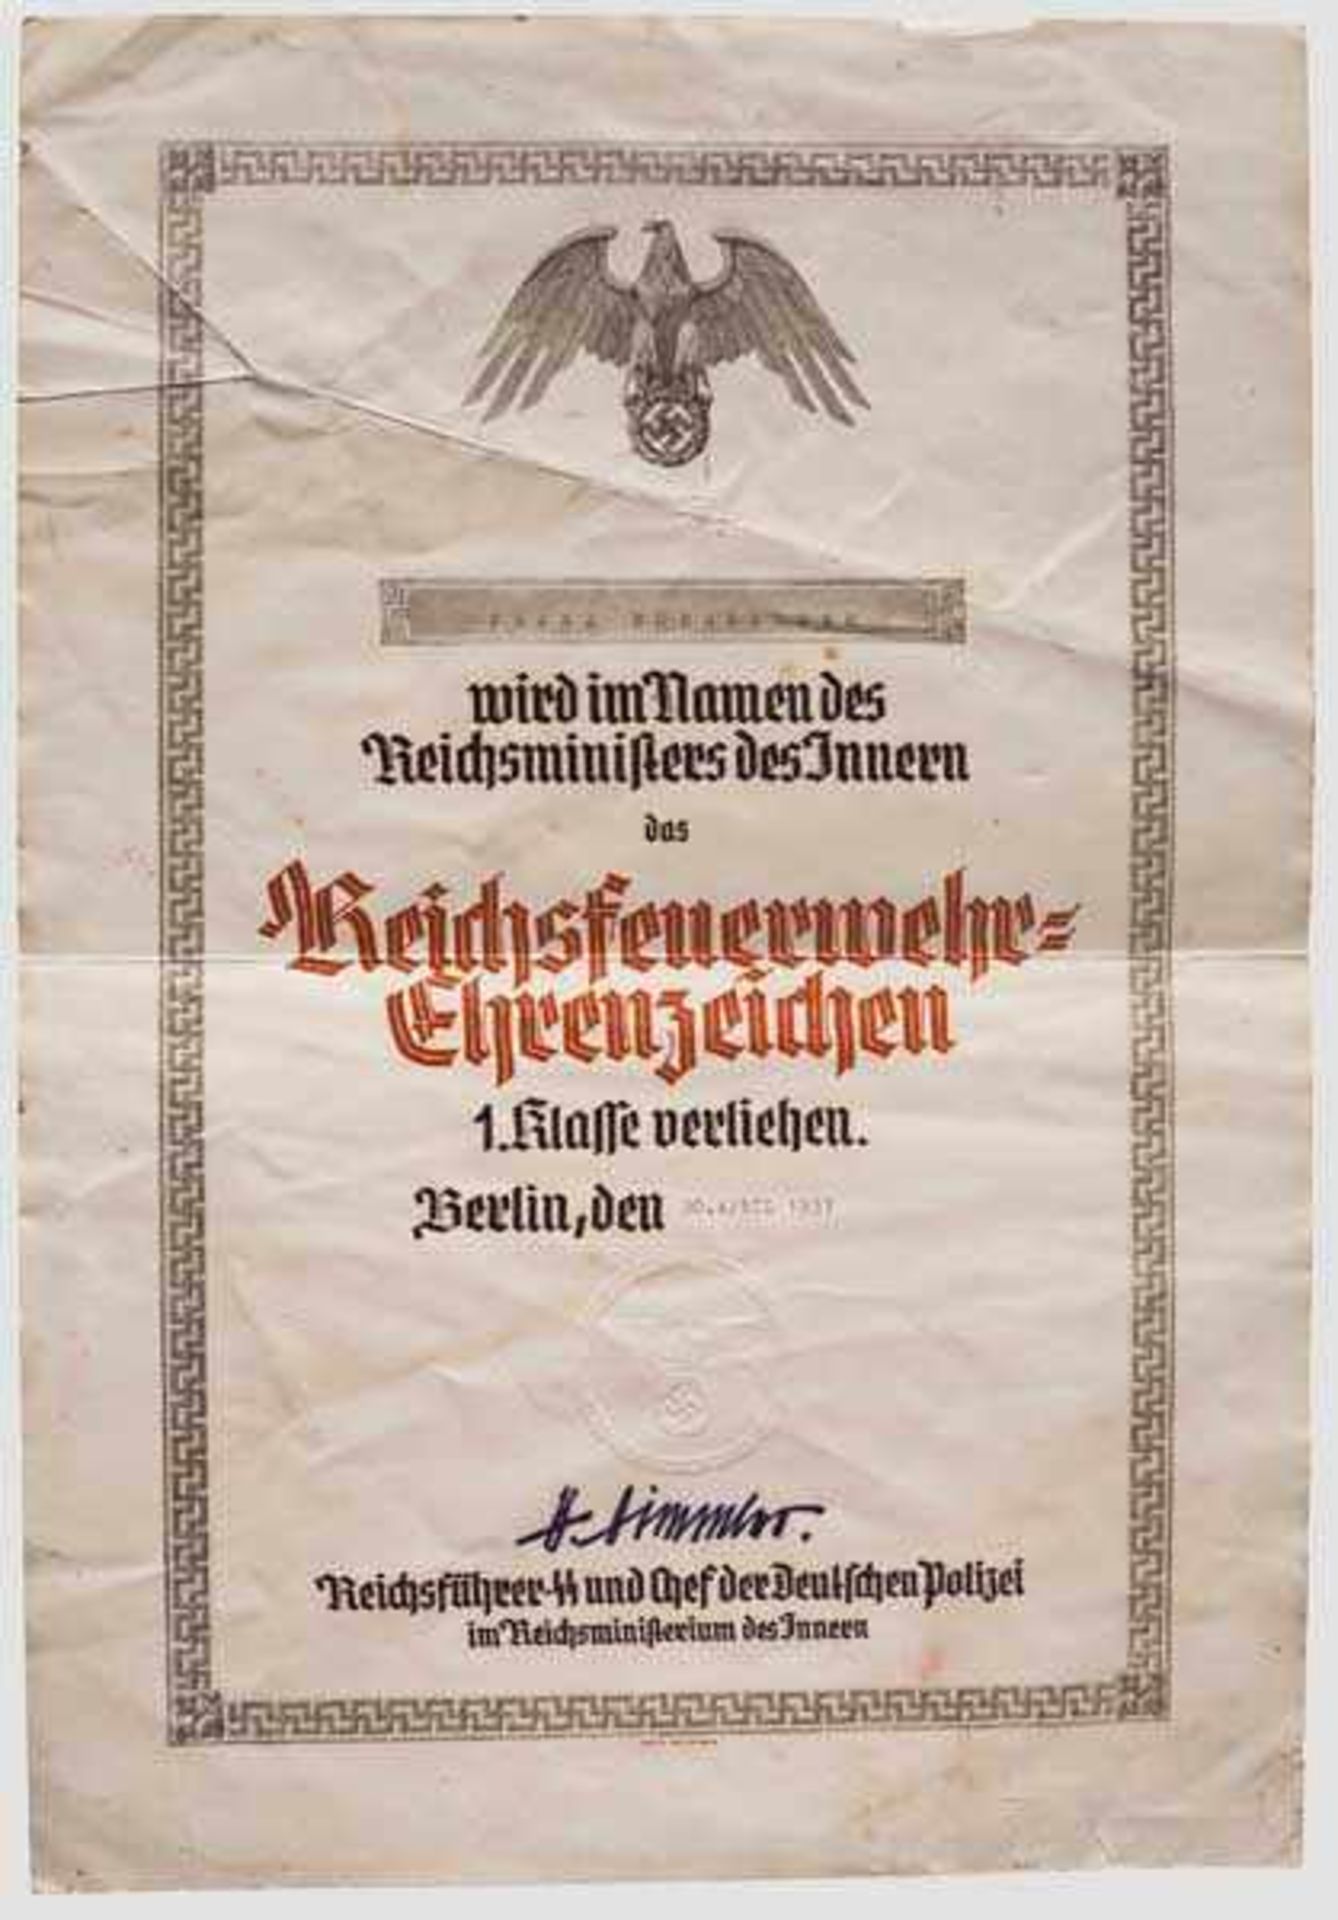 Verleihungsurkunde zum Reichsfeuerwehr-Ehrenzeichen 1. Klasse vom 20.4.1937 Große Schmuckurkunde zum